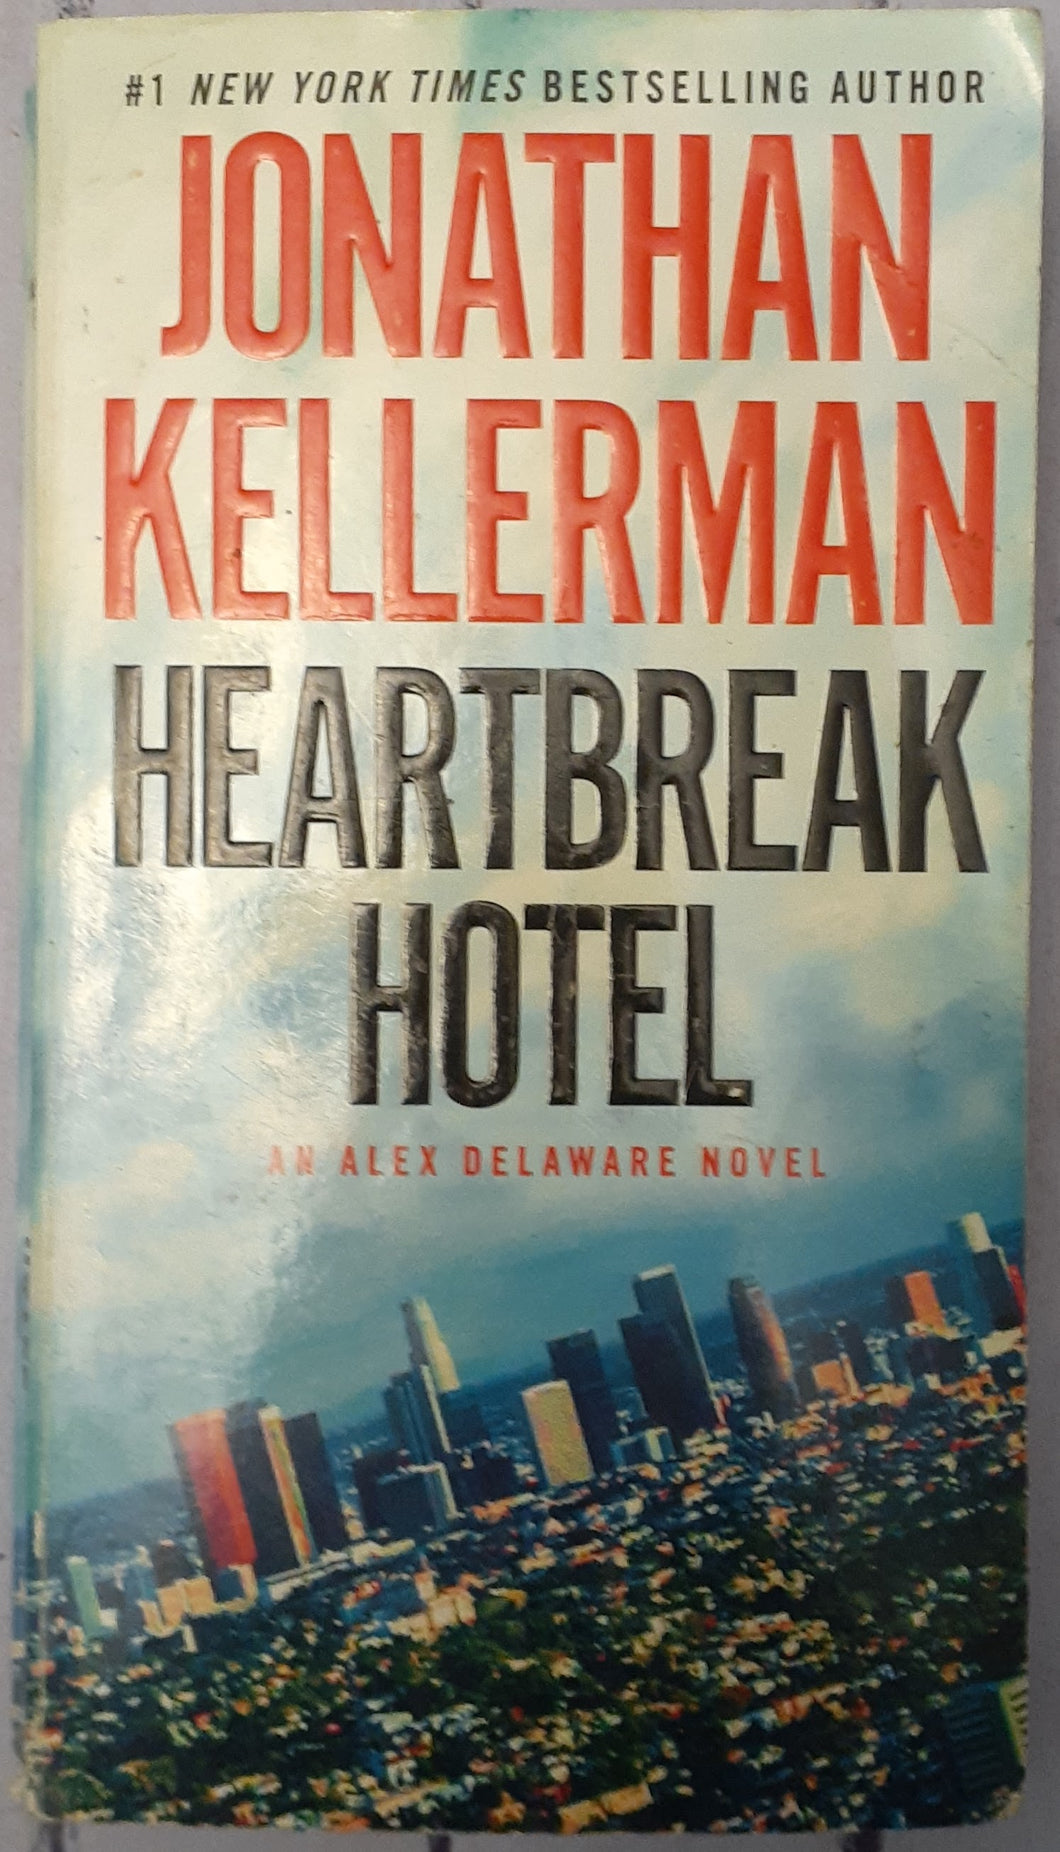 Heartbreak Hotel - An Alex Delaware Novel